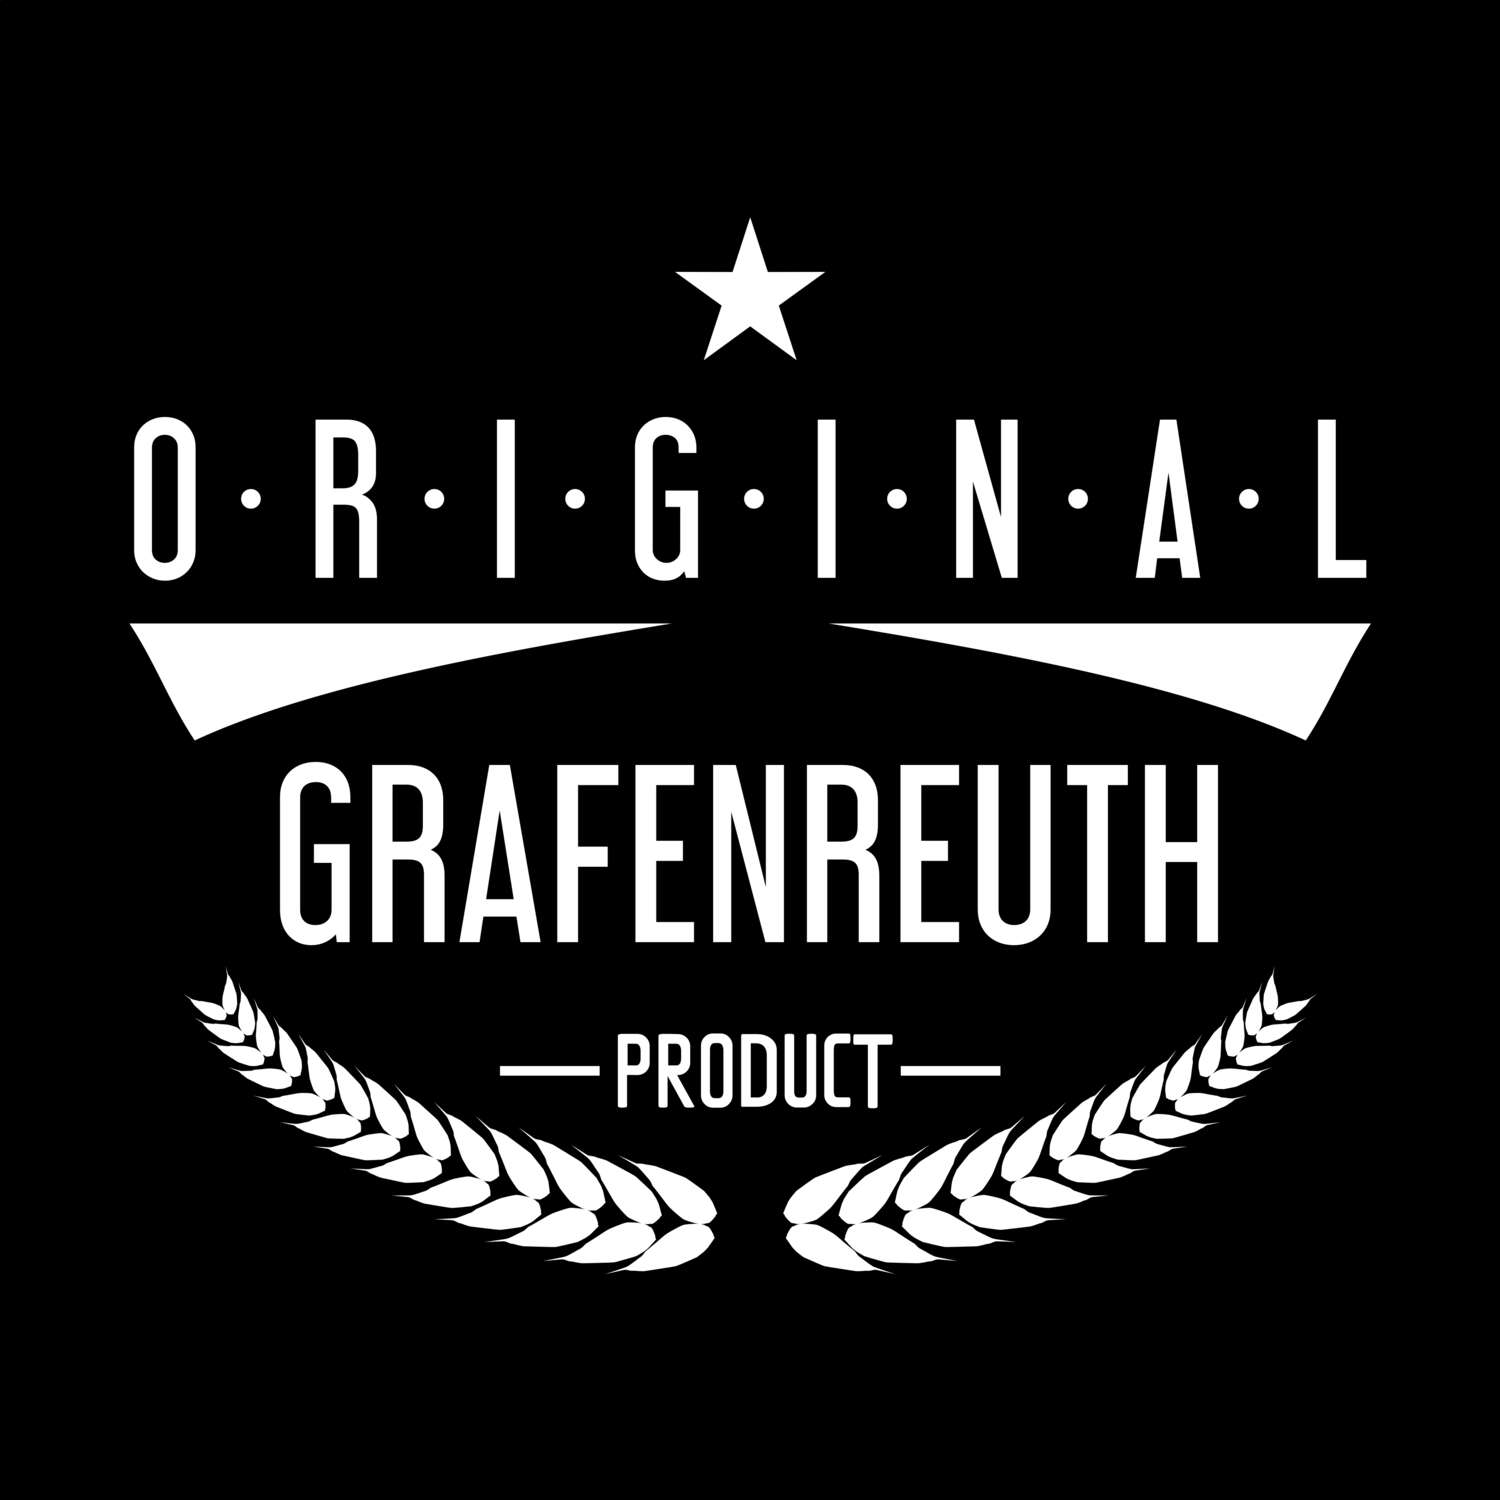 Grafenreuth T-Shirt »Original Product«